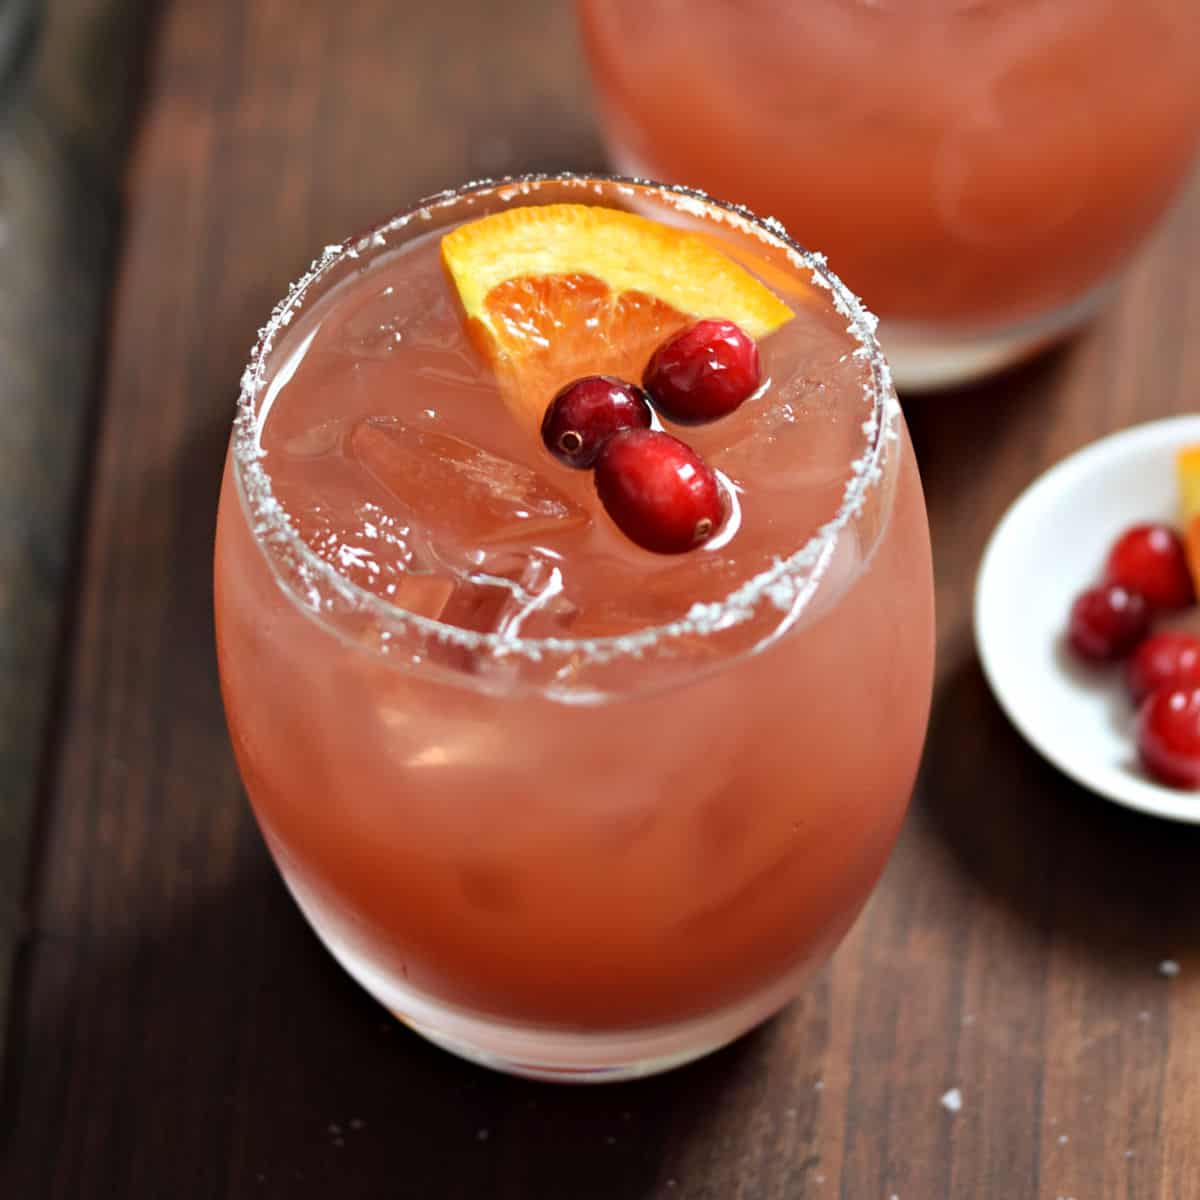 Cranberry Orange Margarita